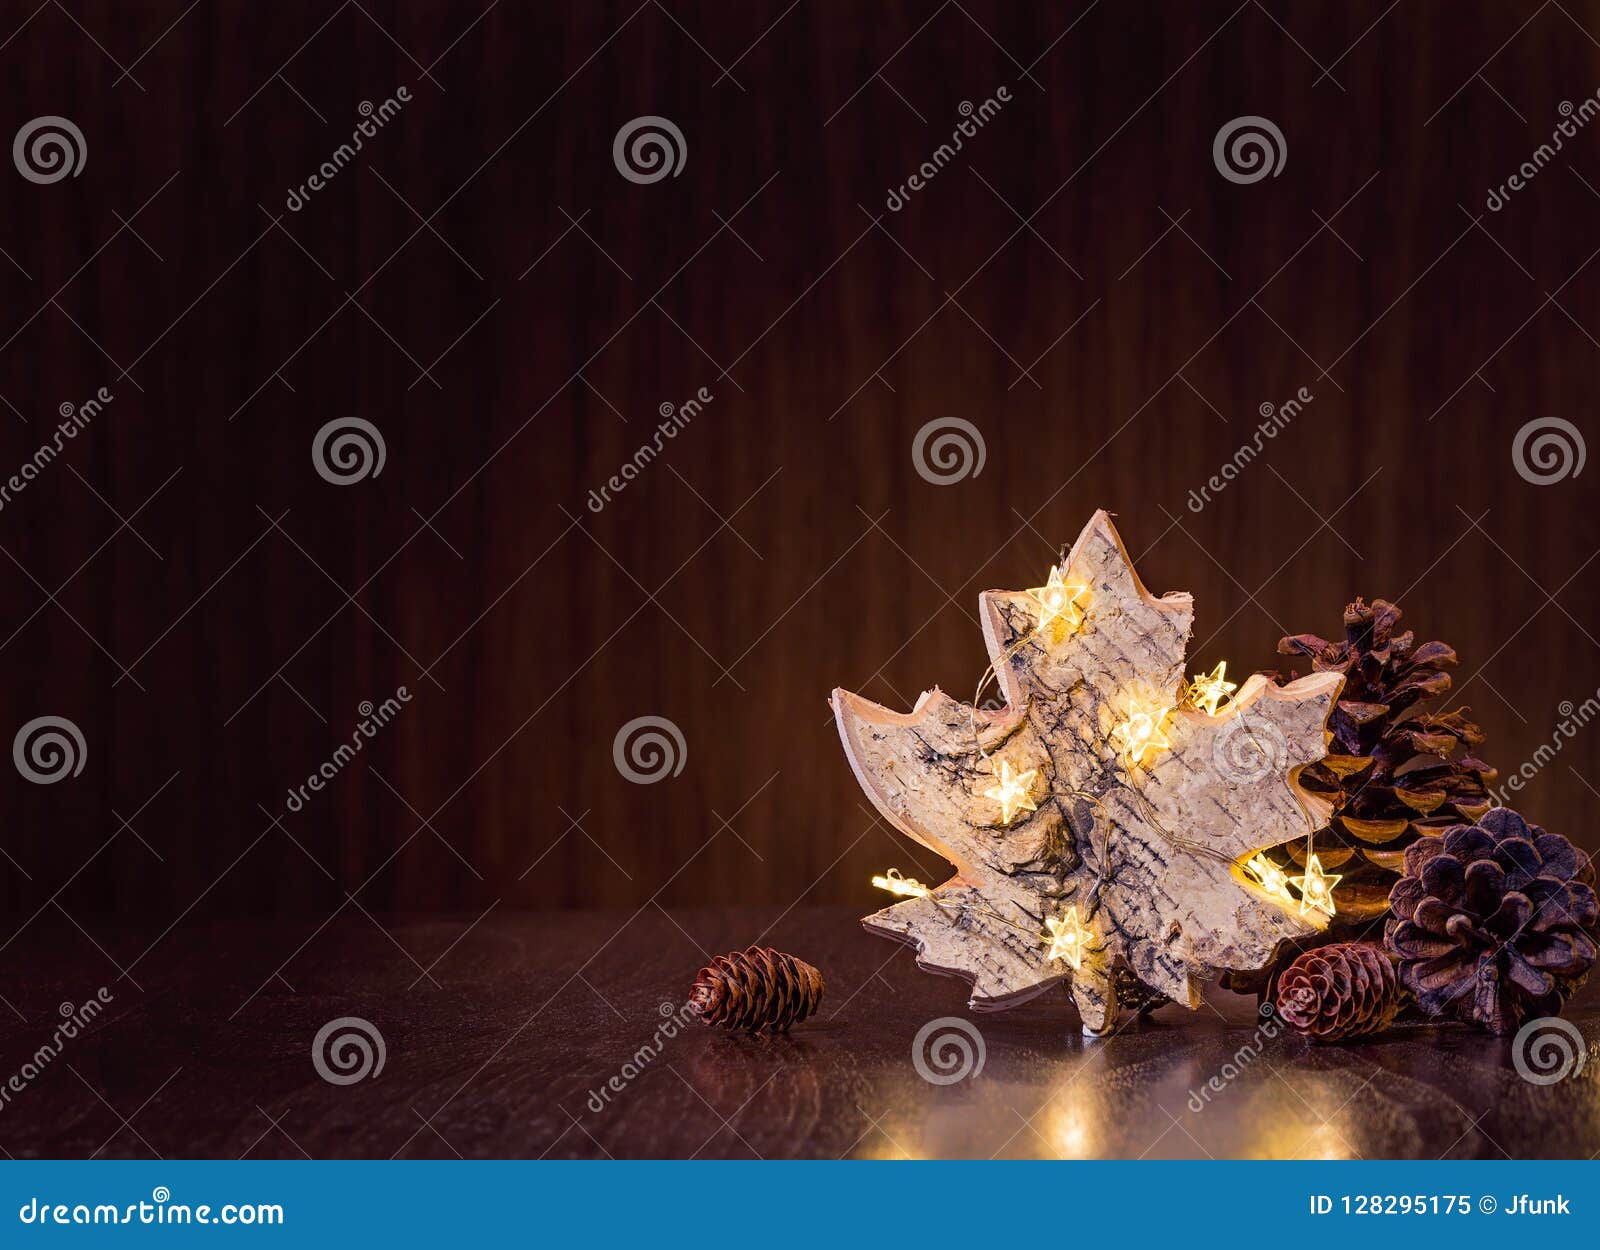 Decorazioni Natalizie Naturali.Decorazioni Naturali Di Natale Con Le Luci Immagine Stock Immagine Di Luce Scuro 128295175